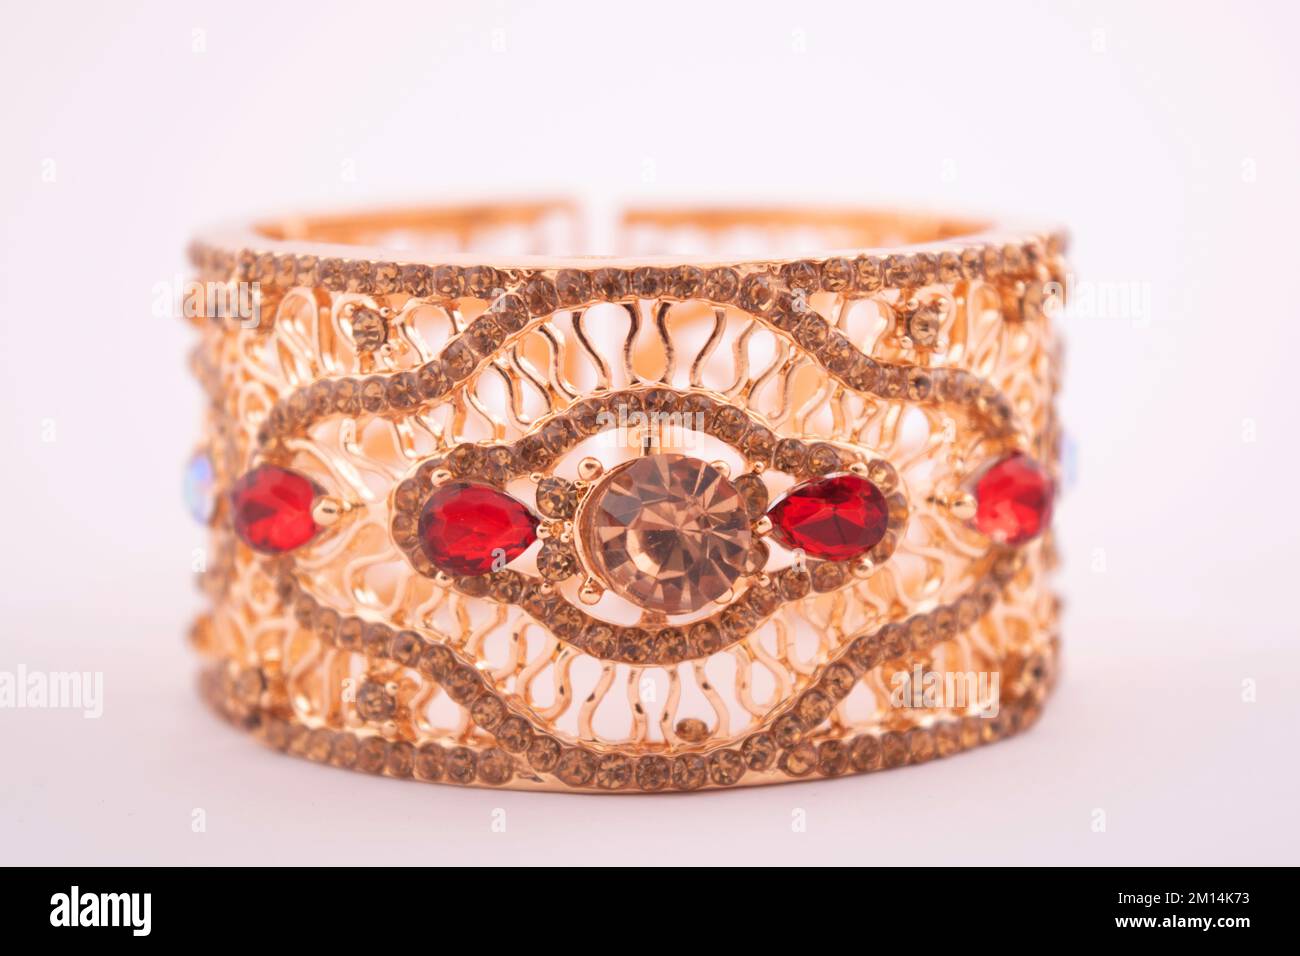 Bracelet en or semi-précieux avec pierre rouge isolée sur fond blanc Banque D'Images